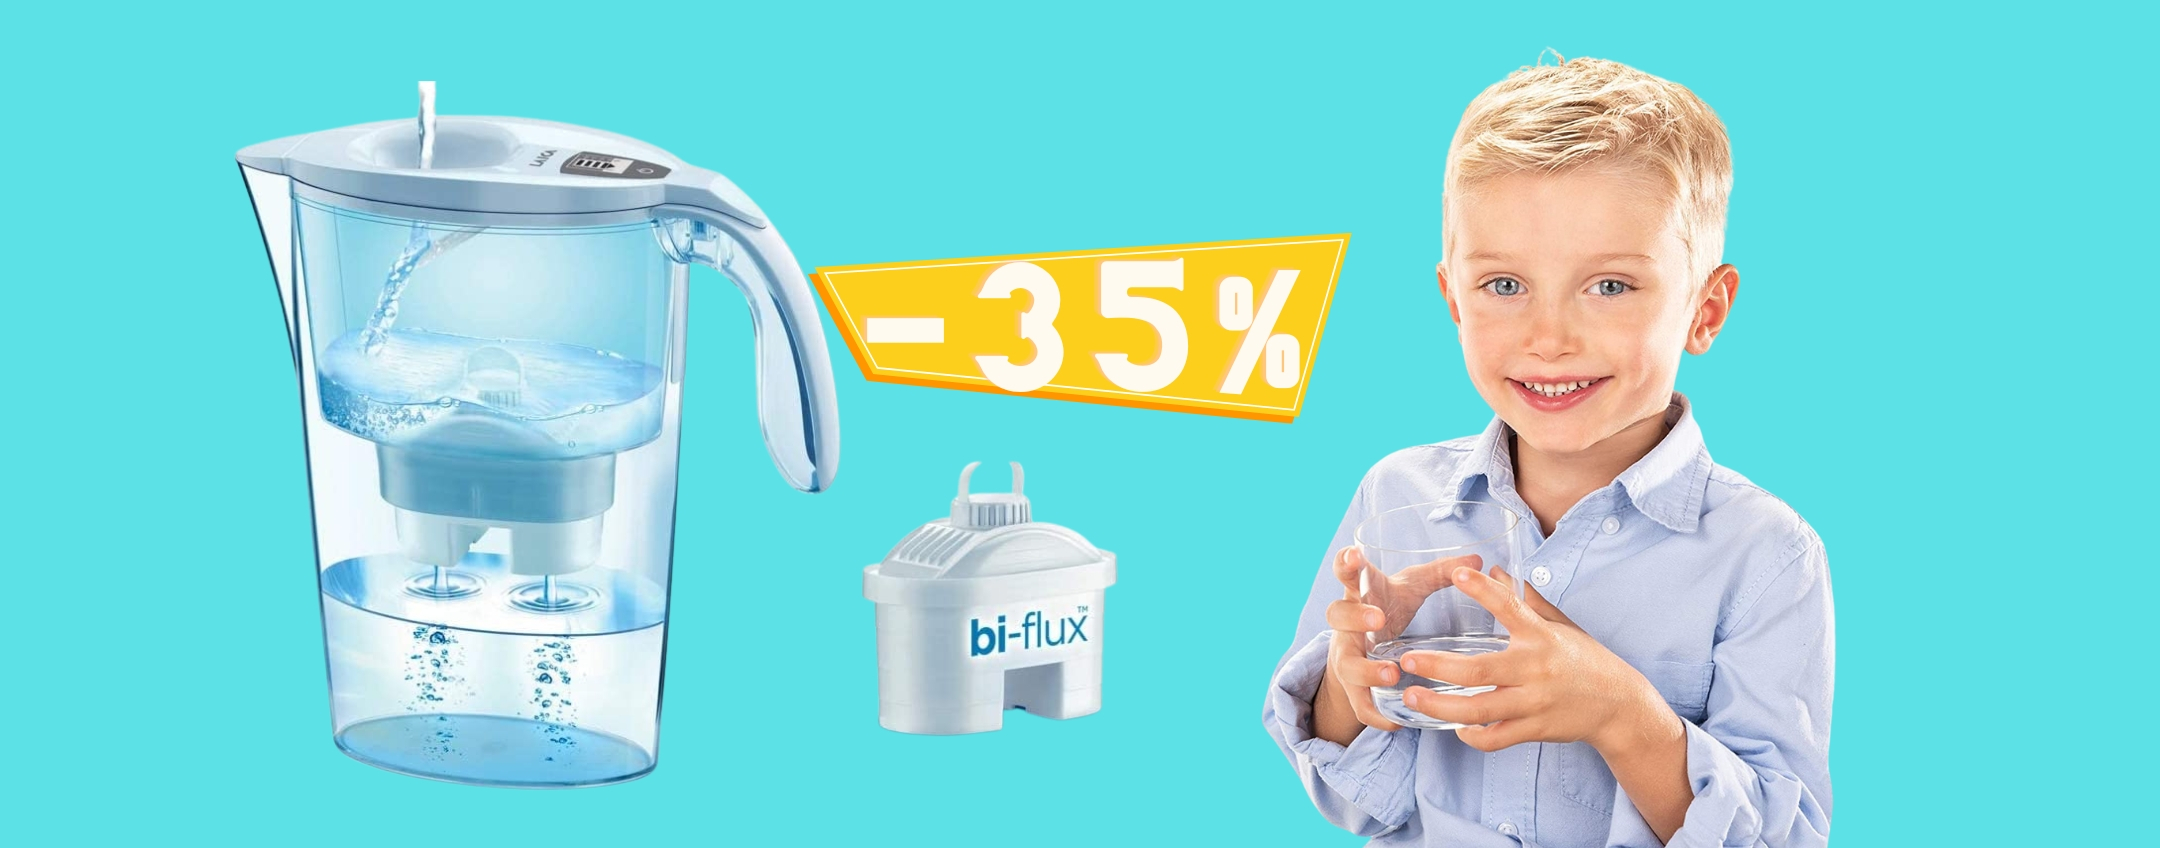 Caraffa filtrante: acqua buona e sana con una spesa RIDICOLA (14€)